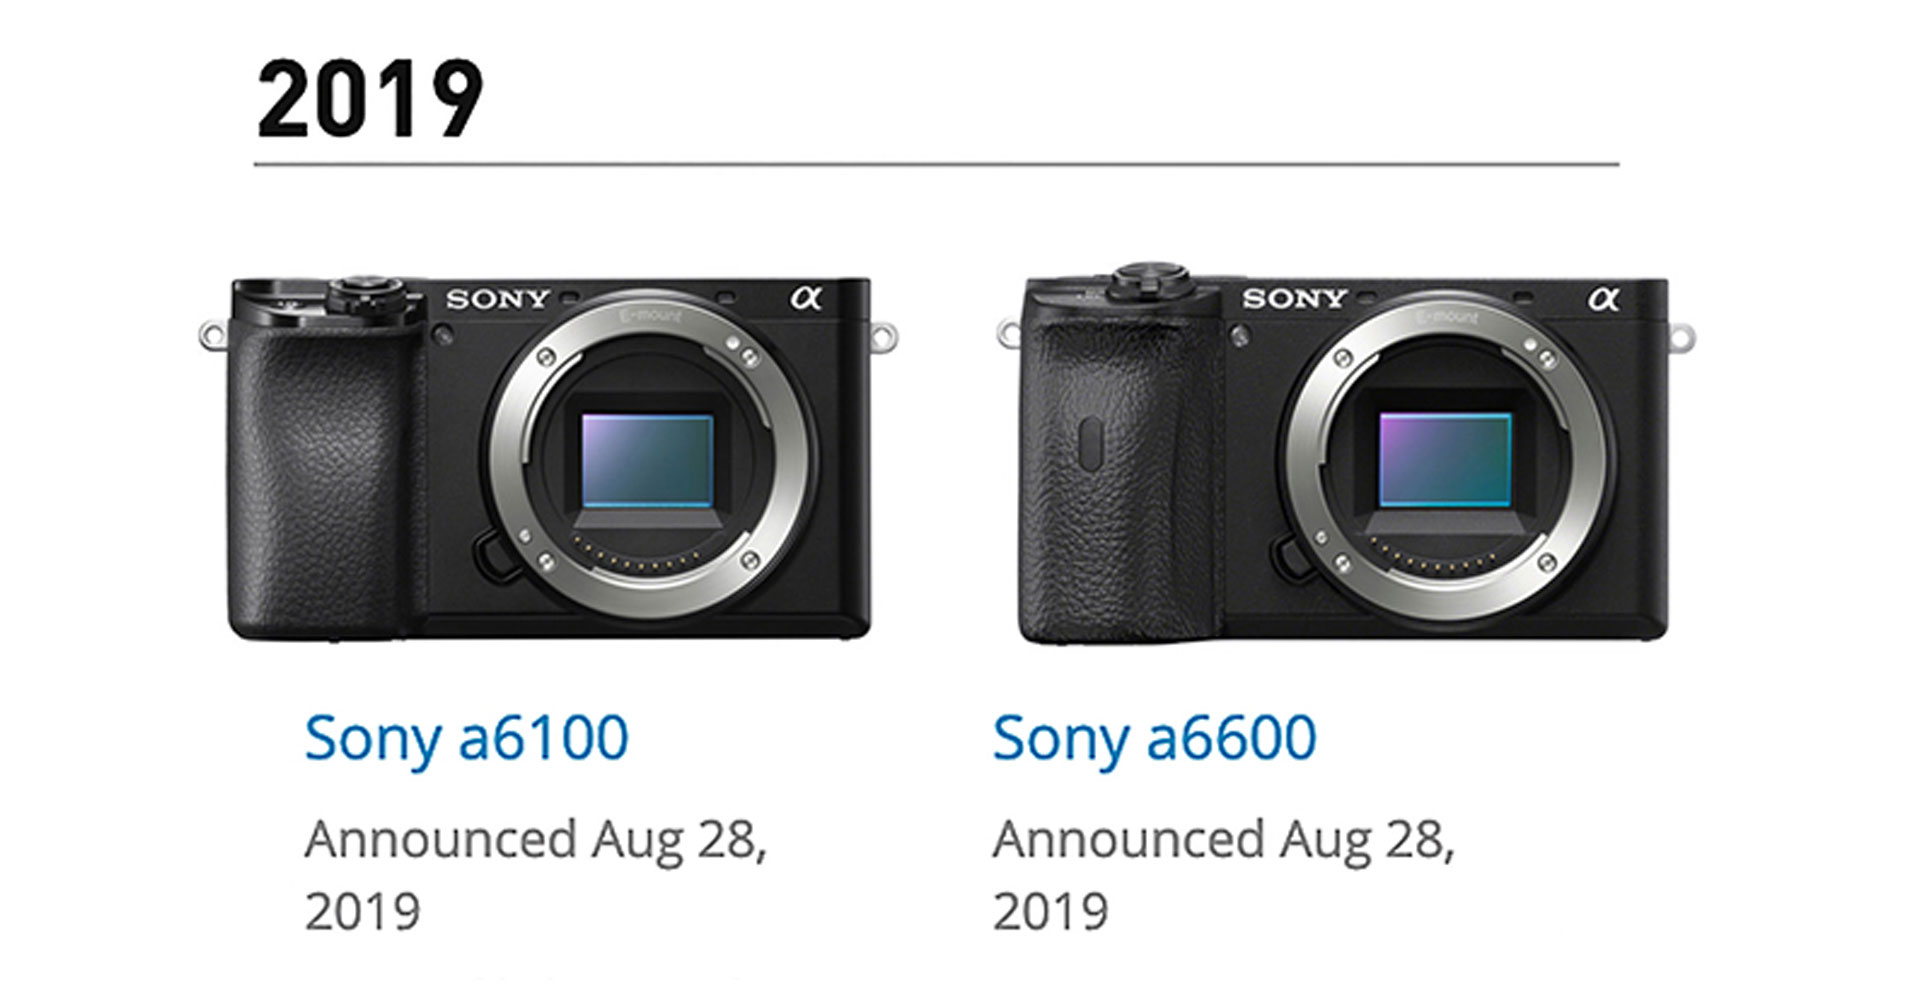 ลือ! Sony เตรียมเปิดตัวกล้อง APS-C E-mount ระดับ High End ในปีนี้